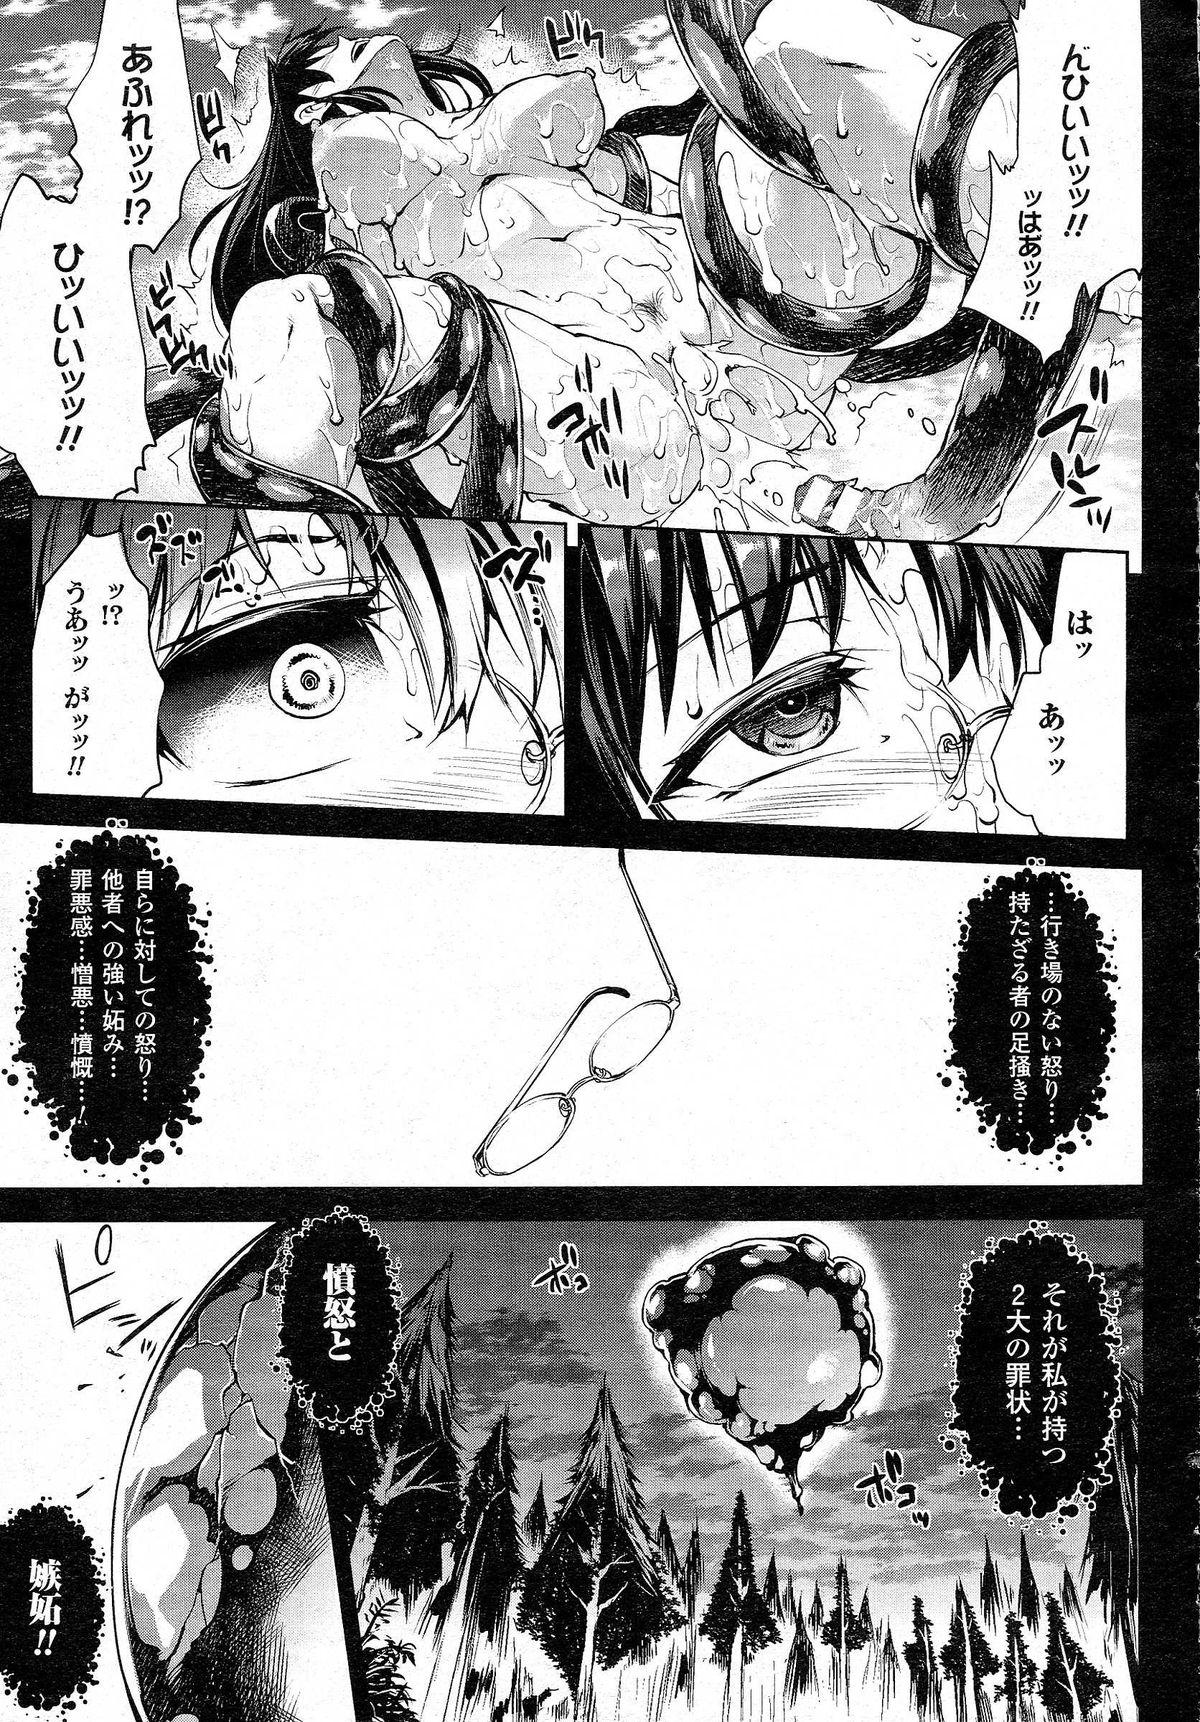 [Erect Sawaru] Shinkyoku no Grimoire -PANDRA saga 2nd story- CH 13-20 10